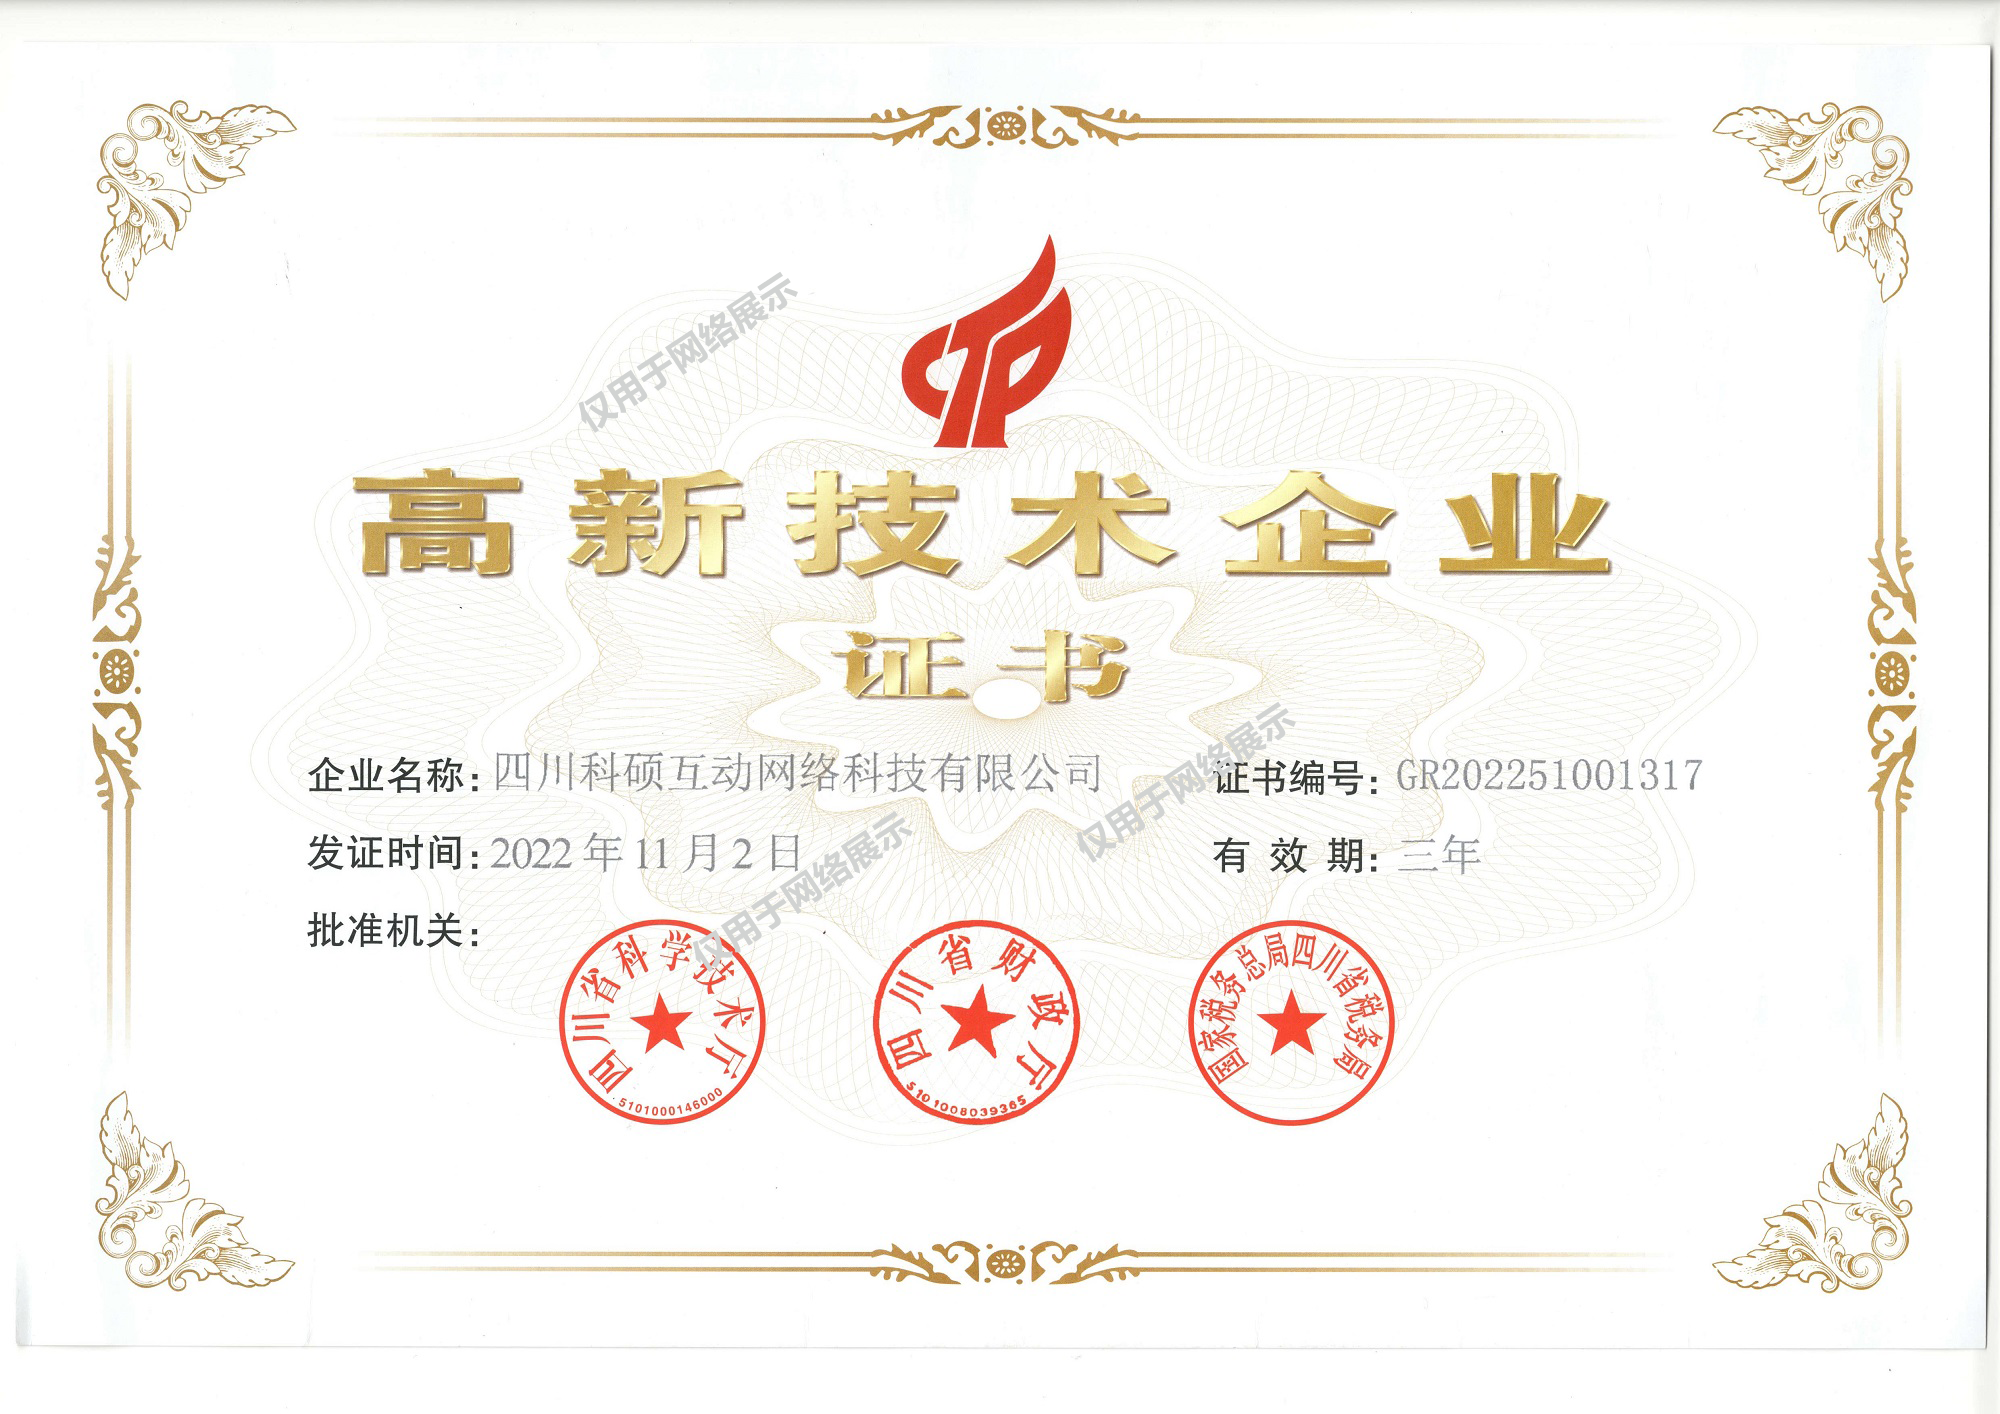 祝贺四川科硕互动网络科技有限公司荣获国家高新技术企业认证